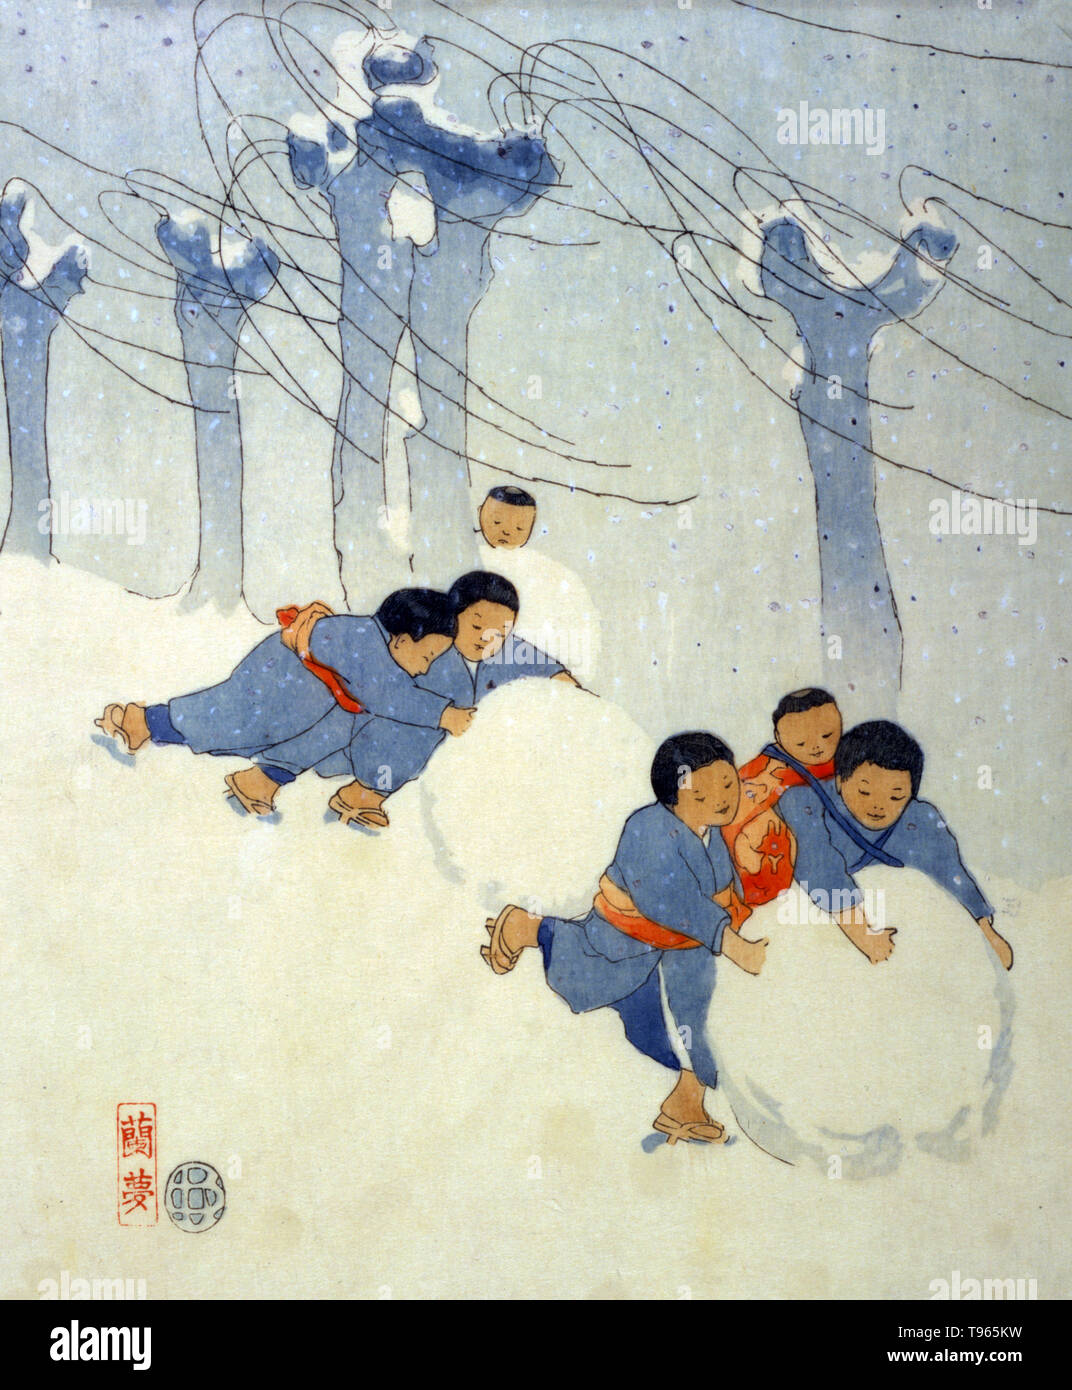 Japanische Kinder Rollen große Schnee Kugeln. Ukiyo-e (Bilder der fließenden Welt) ist ein Genre der japanischen Kunst, die vom 17. bis 19. Jahrhundert blühte. Ukiyo-e war zentral für die Wahrnehmung des Westens für Japanische Kunst im späten 19. Jahrhundert. Die Landschaft Genre hat kommen die westlichen Auffassungen von Ukiyo-e zu beherrschen, obwohl Ukiyo-e eine lange Geschichte vor diesen späten - ära Meister hatte. Stockfoto